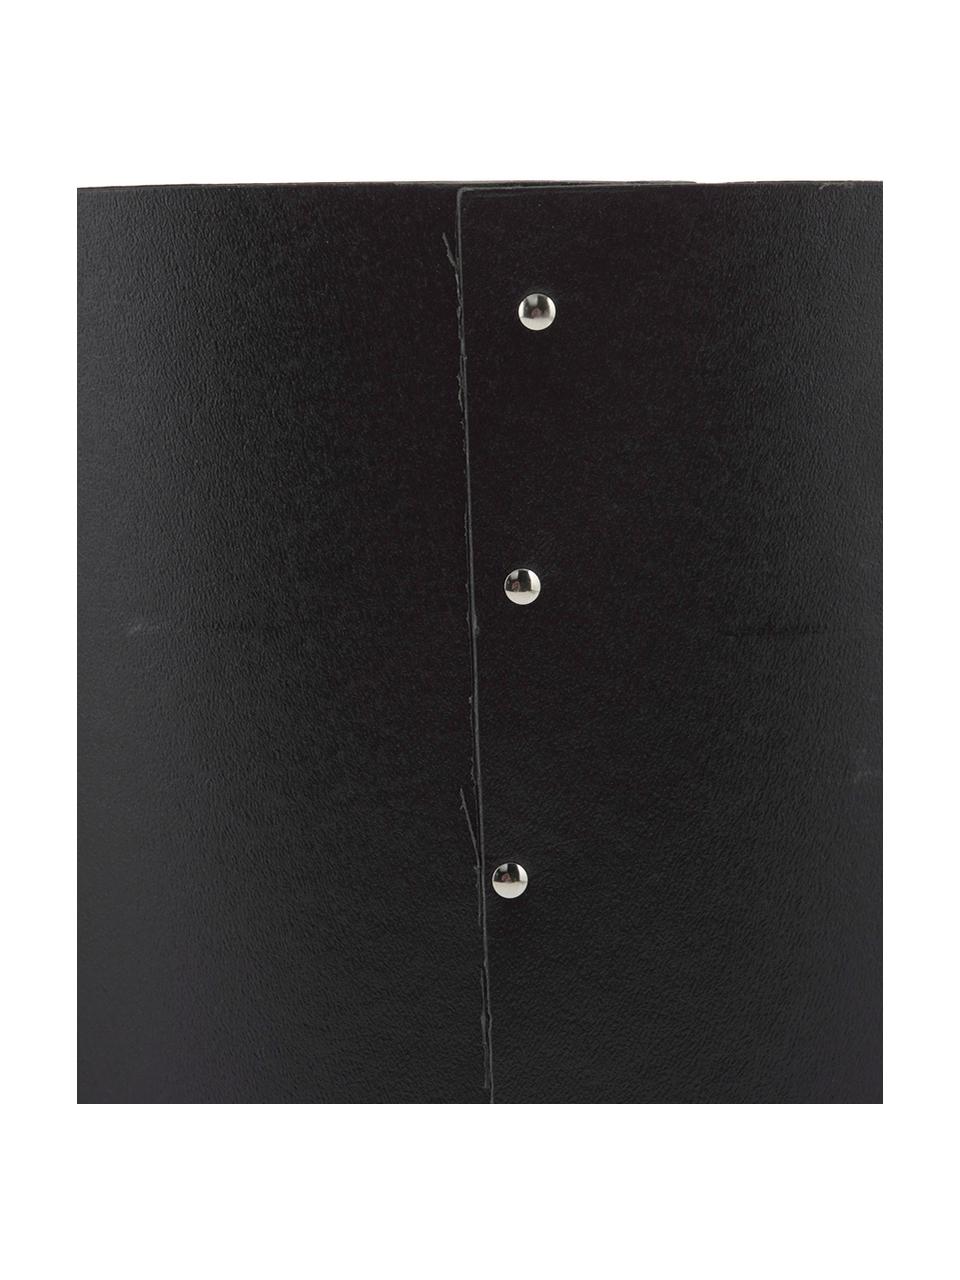 Papiermand Aries uit karton in zwart, Massief, gelamineerd karton, Zwart, zilverkleurig, Ø 27 x H 35 cm